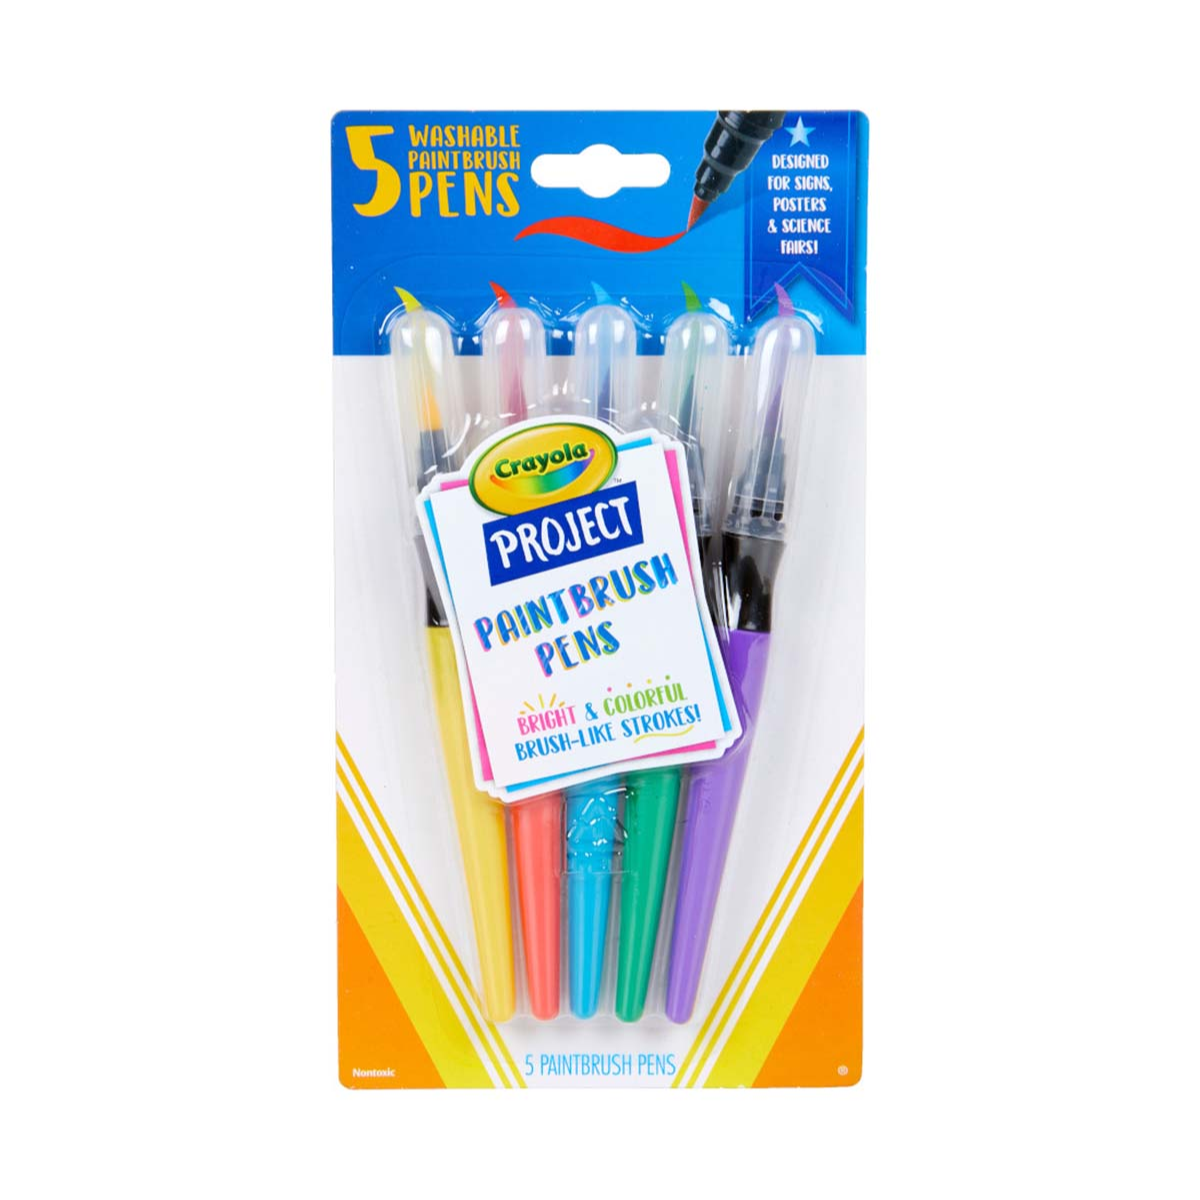 24 Mini Twistables Crayolas - Felix Online